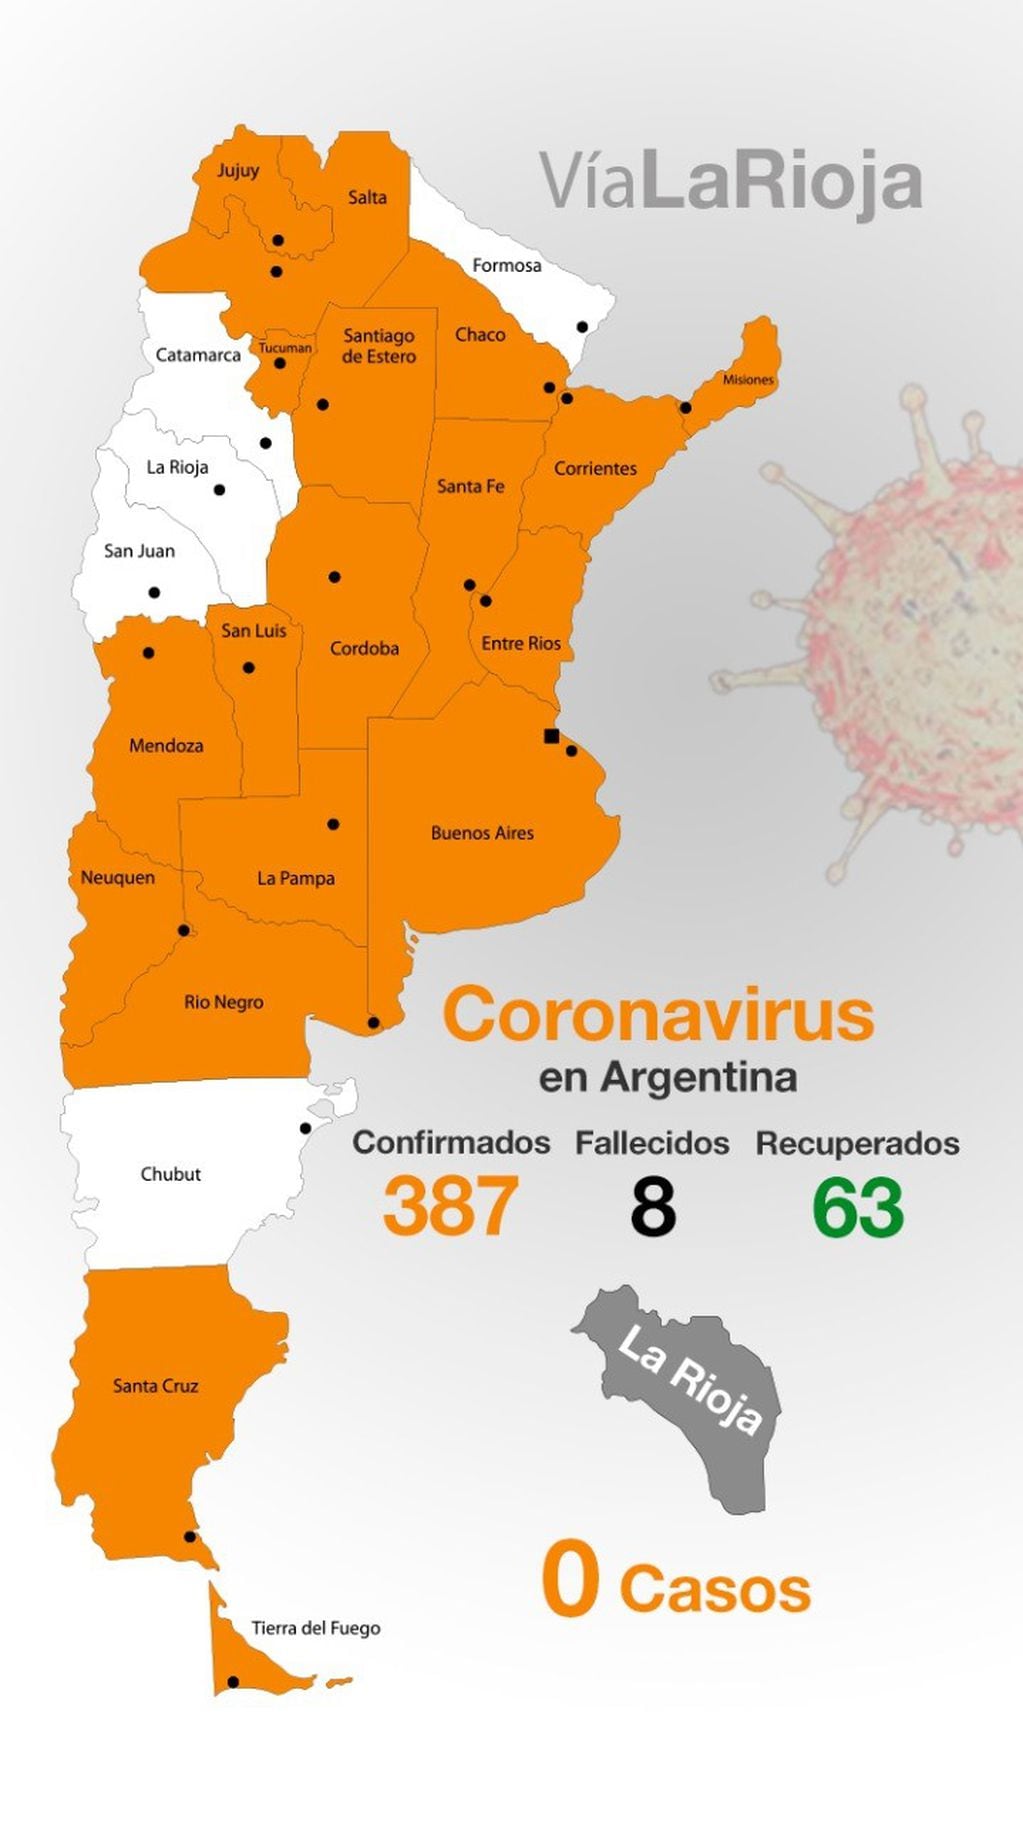 Detalle de infectados, recuperados y fallecimientos por provincia / Covid-19 / 25-03-20